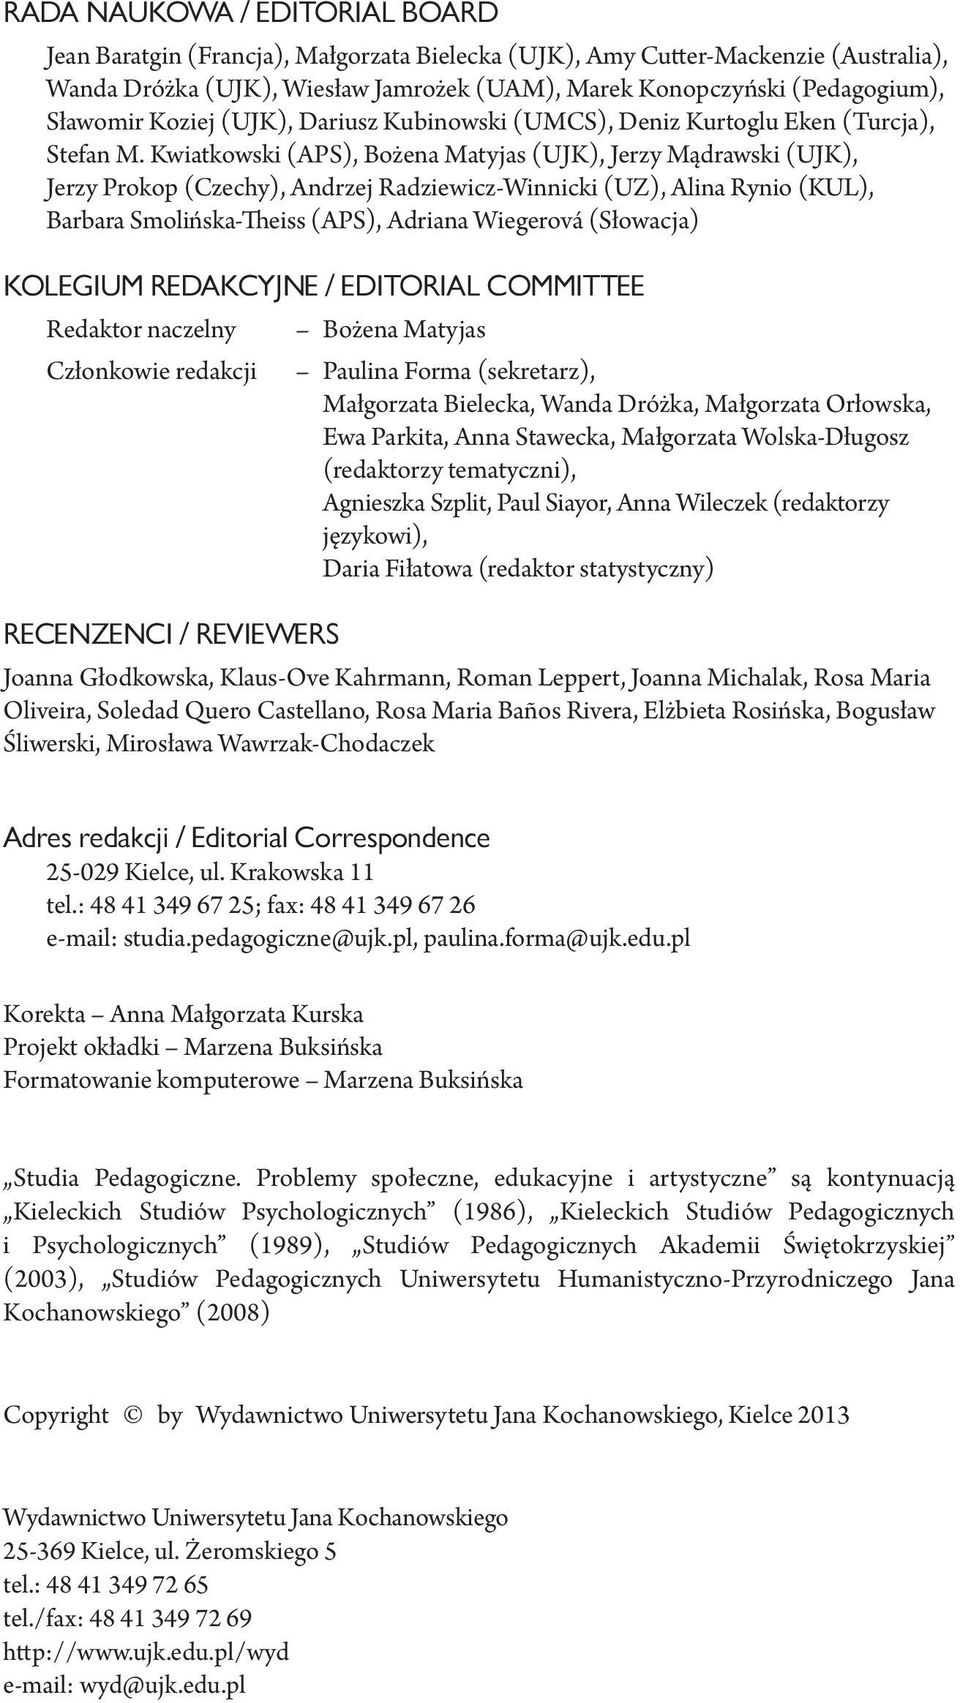 Kwiatkowski (APS), Bożena Matyjas (UJK), Jerzy Mądrawski (UJK), Jerzy Prokop (Czechy), Andrzej Radziewicz-Winnicki (UZ), Alina Rynio (KUL), Barbara Smolińska-Theiss (APS), Adriana Wiegerová